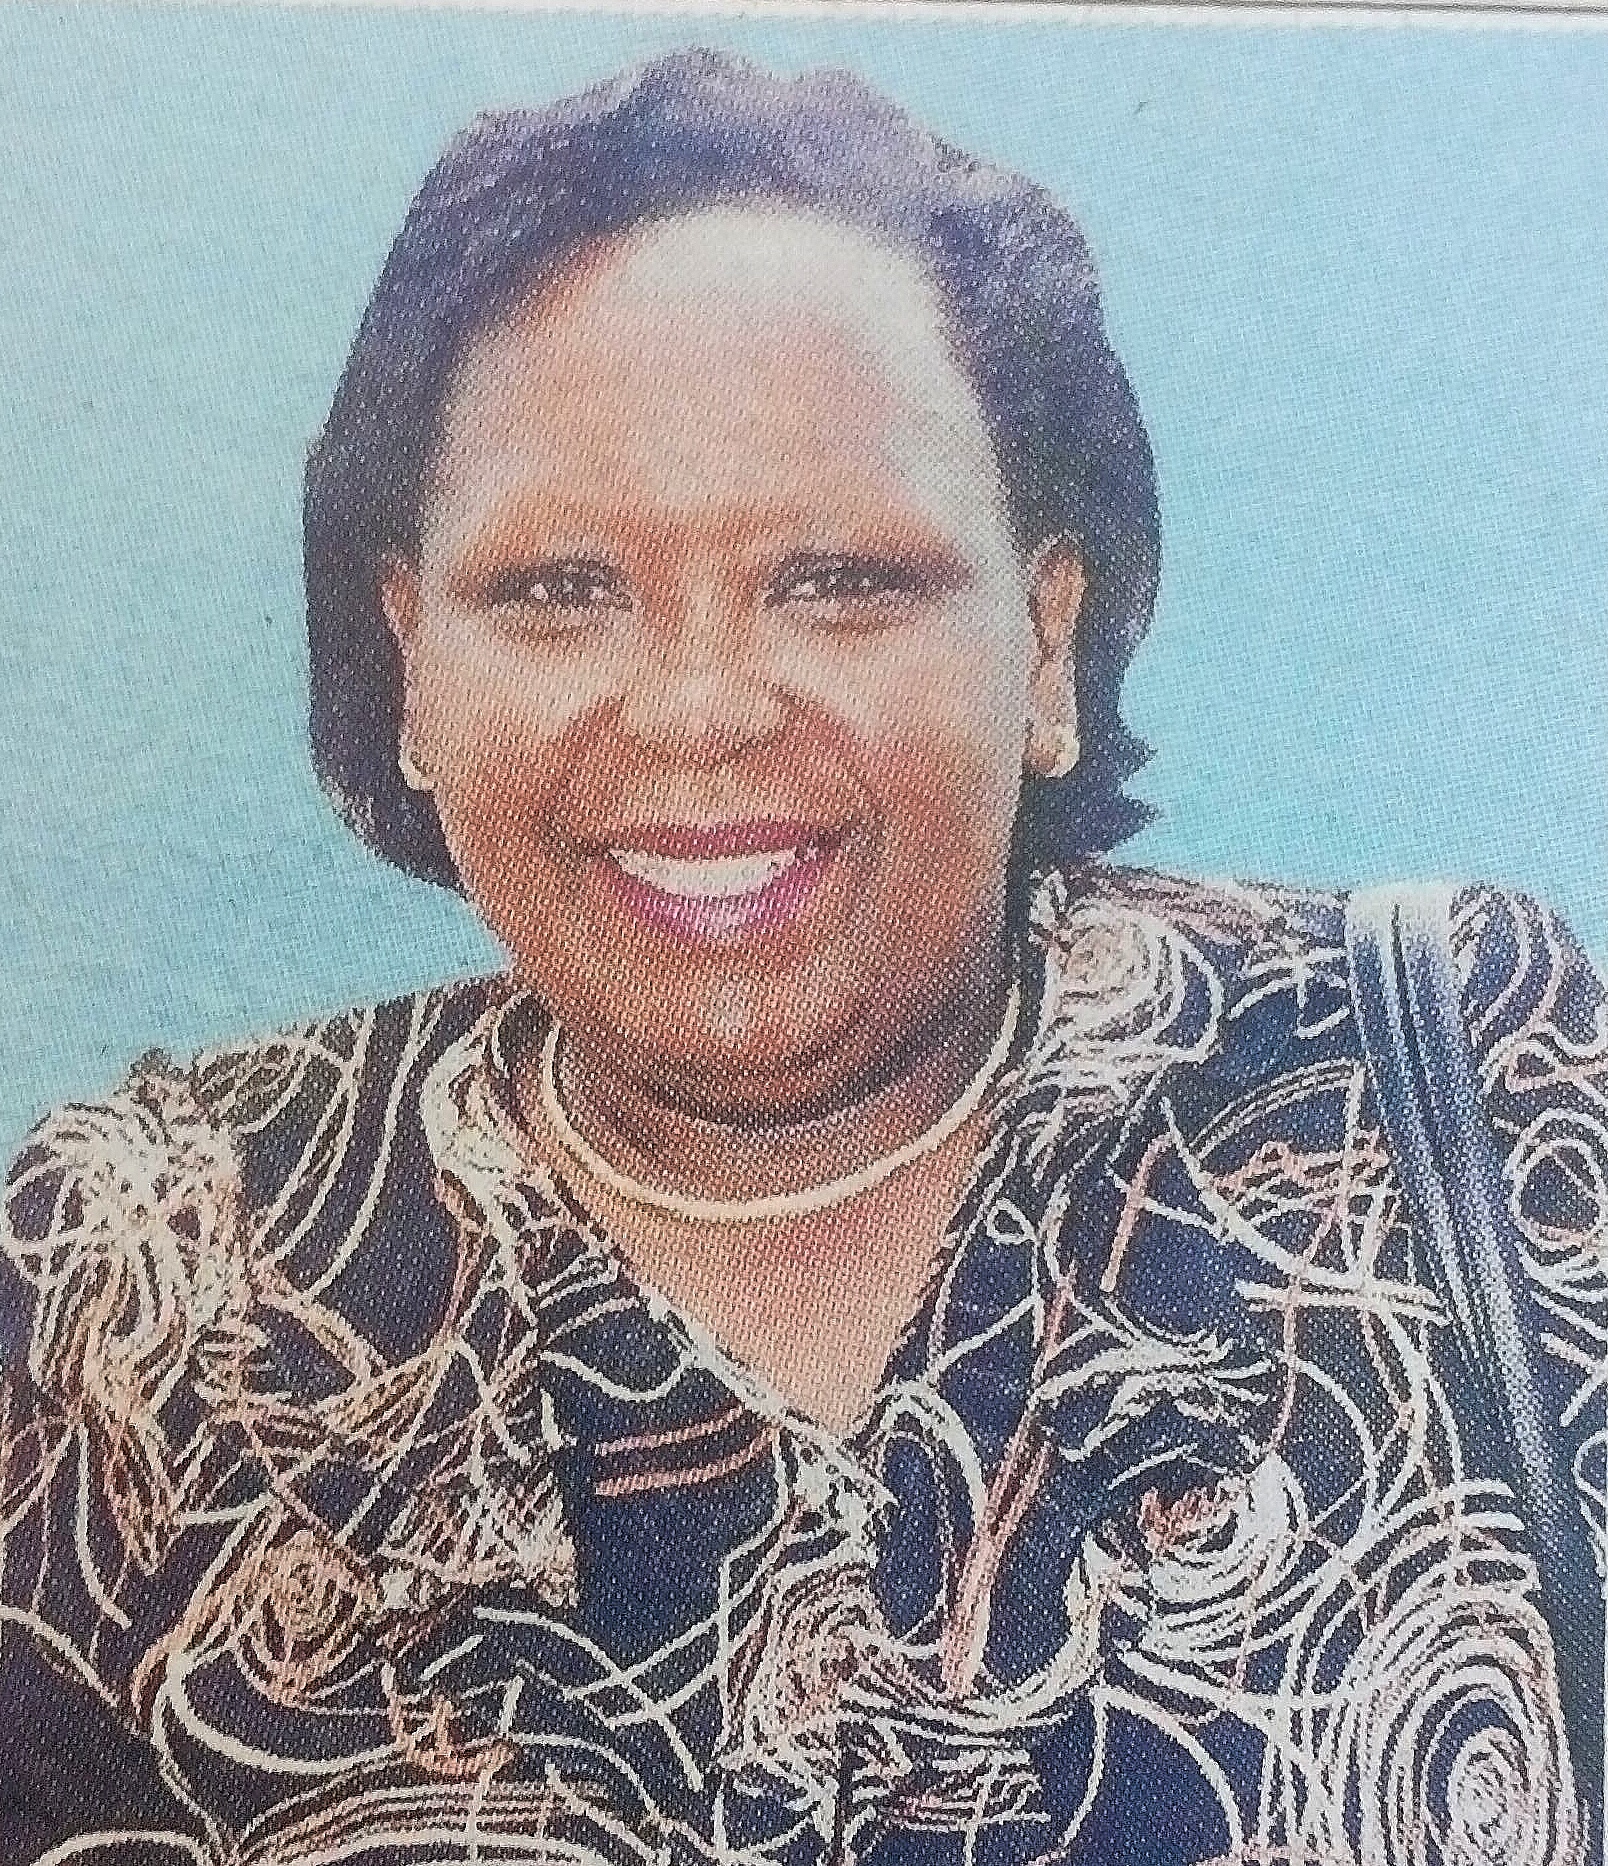 Obituary Image of jane Wambui lrungu